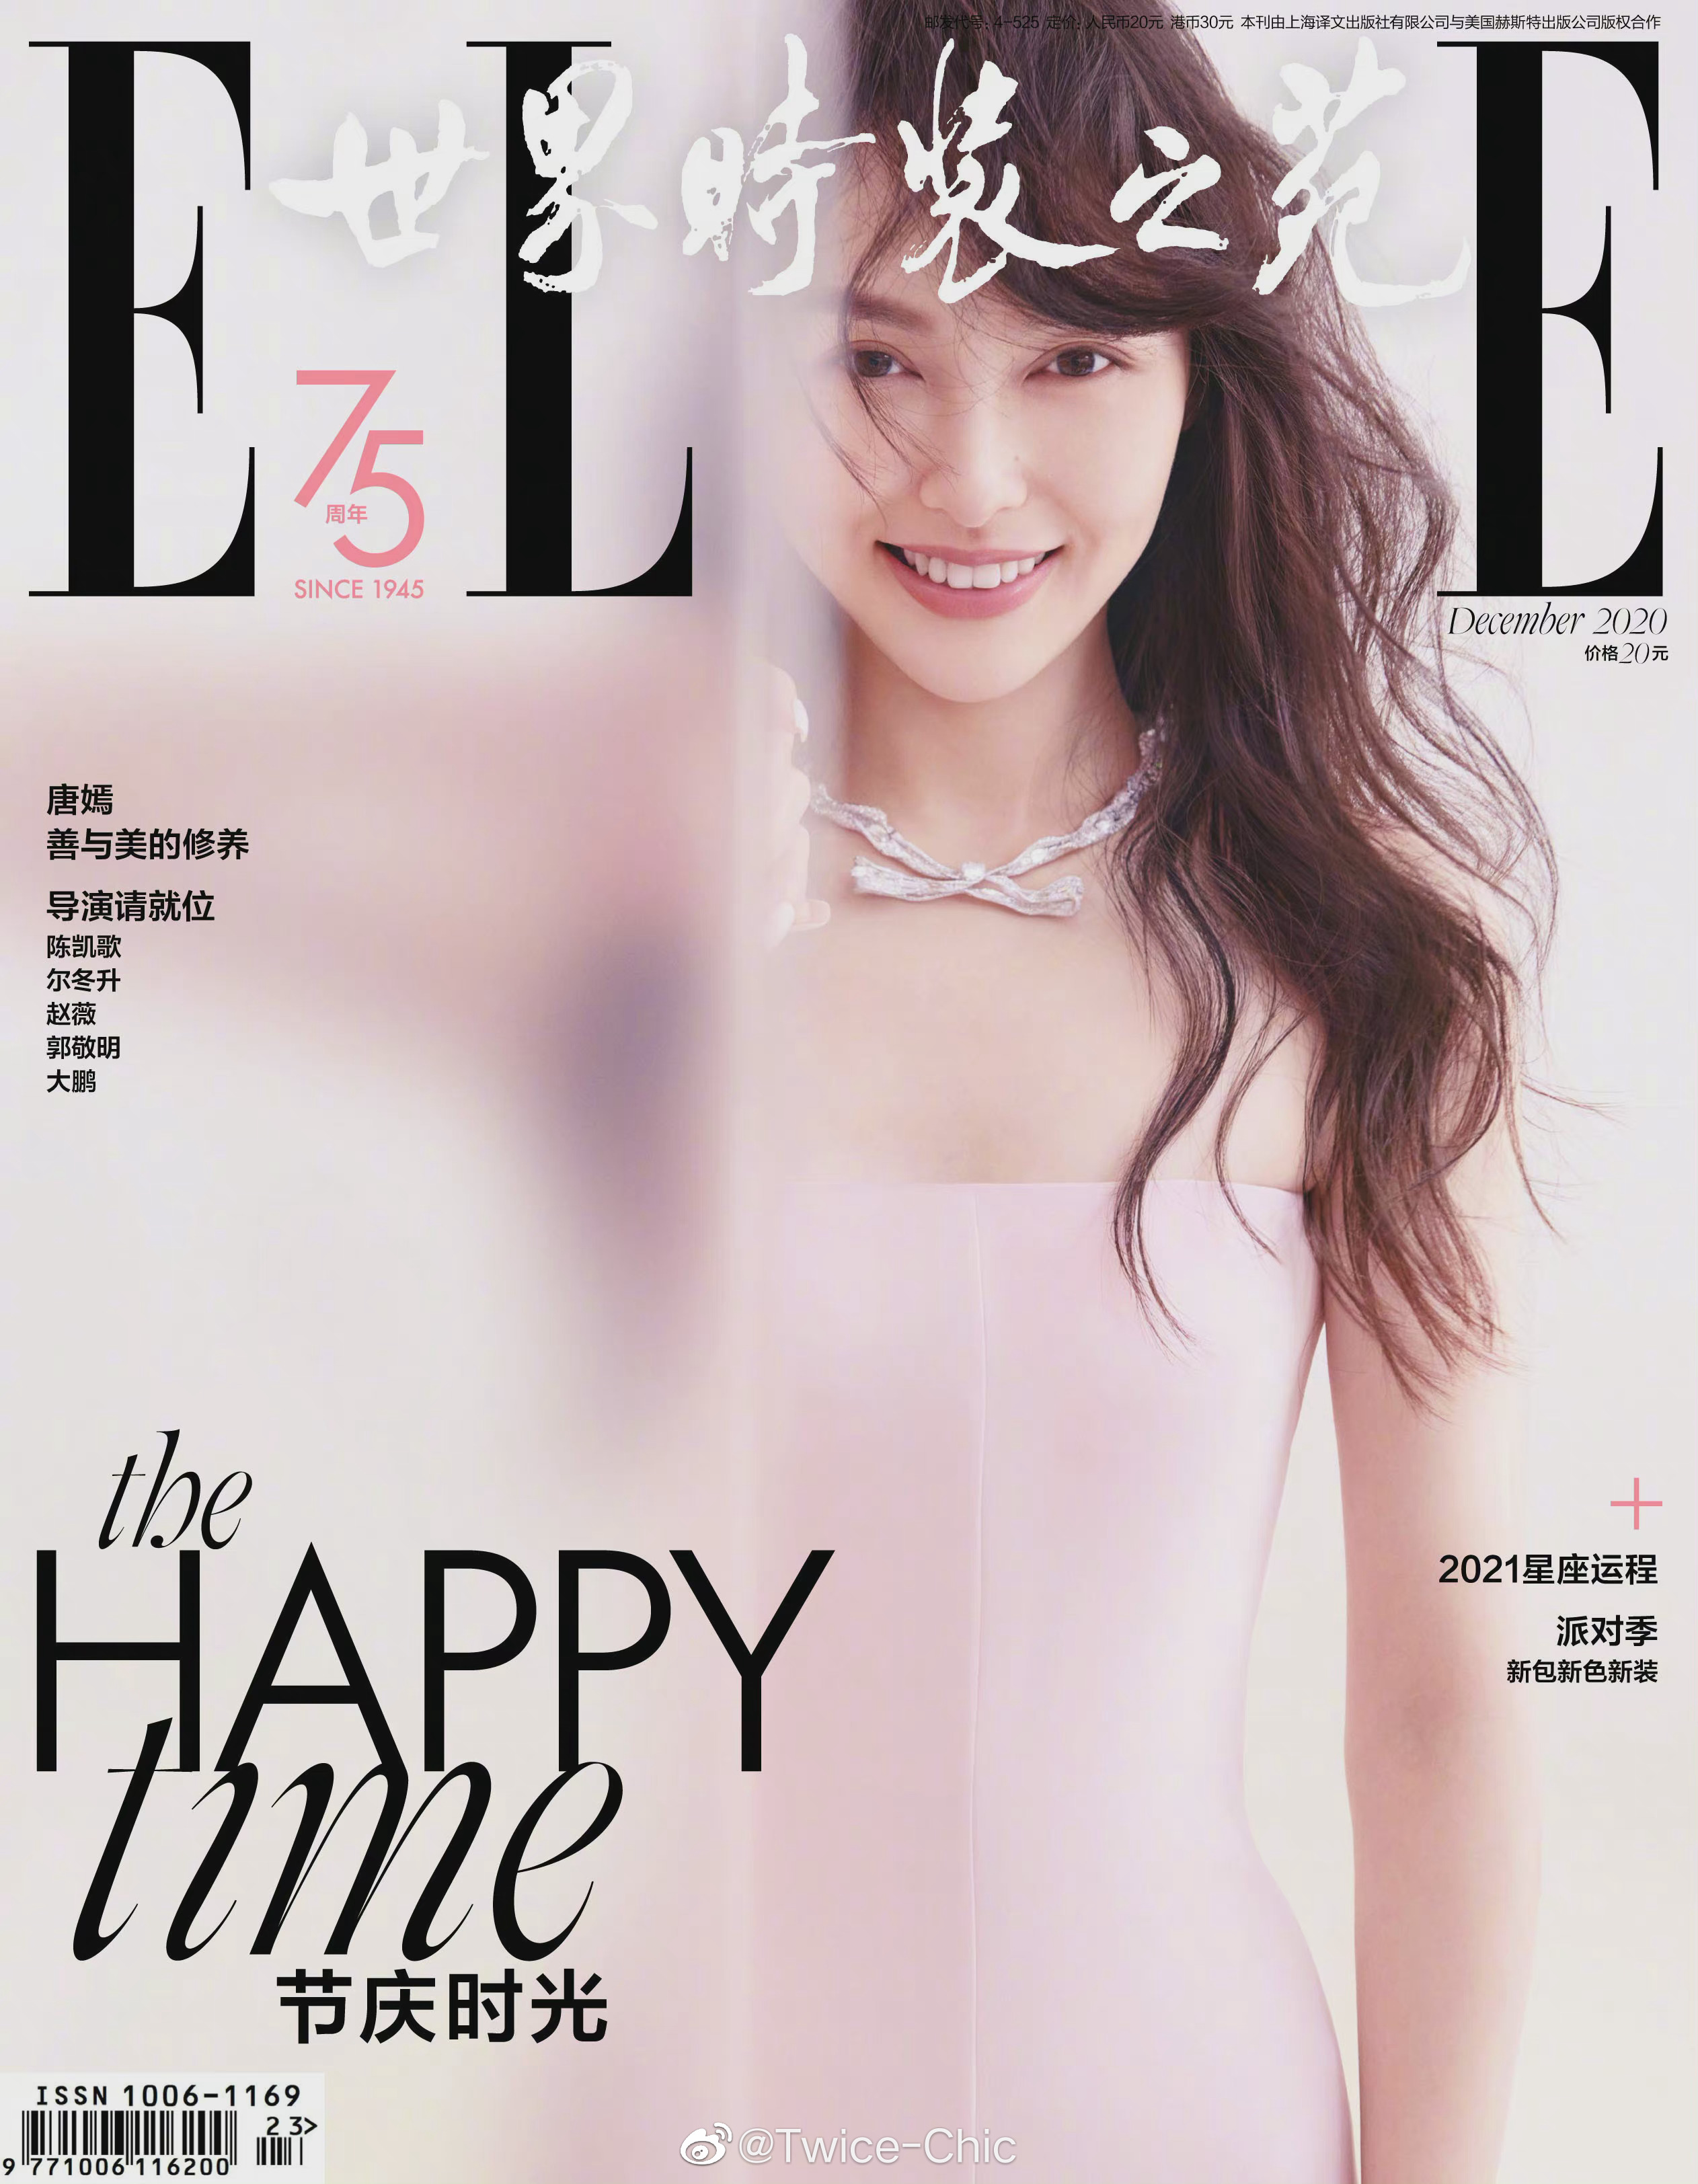 Đụng hàng hiệu trên tạp chí: Song Hye Kyo sắc lạnh, Đường Yên gây tranh cãi với style bù xù - Ảnh 5.